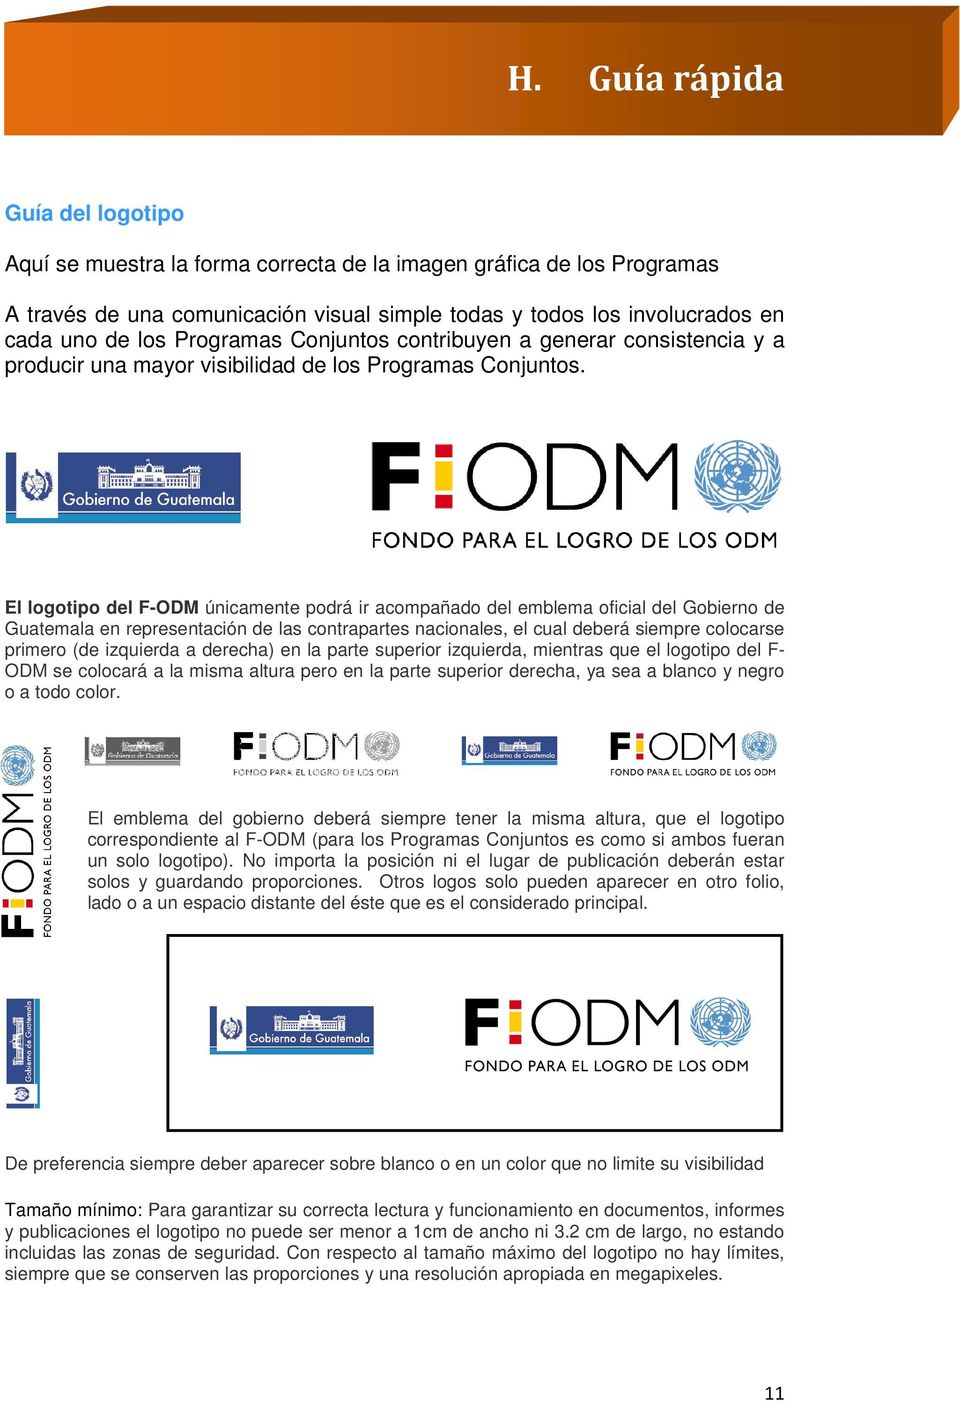 El logotipo del F-ODM únicamente podrá ir acompañado del emblema oficial del Gobierno de Guatemala en representación de las contrapartes nacionales, el cual deberá siempre colocarse primero (de